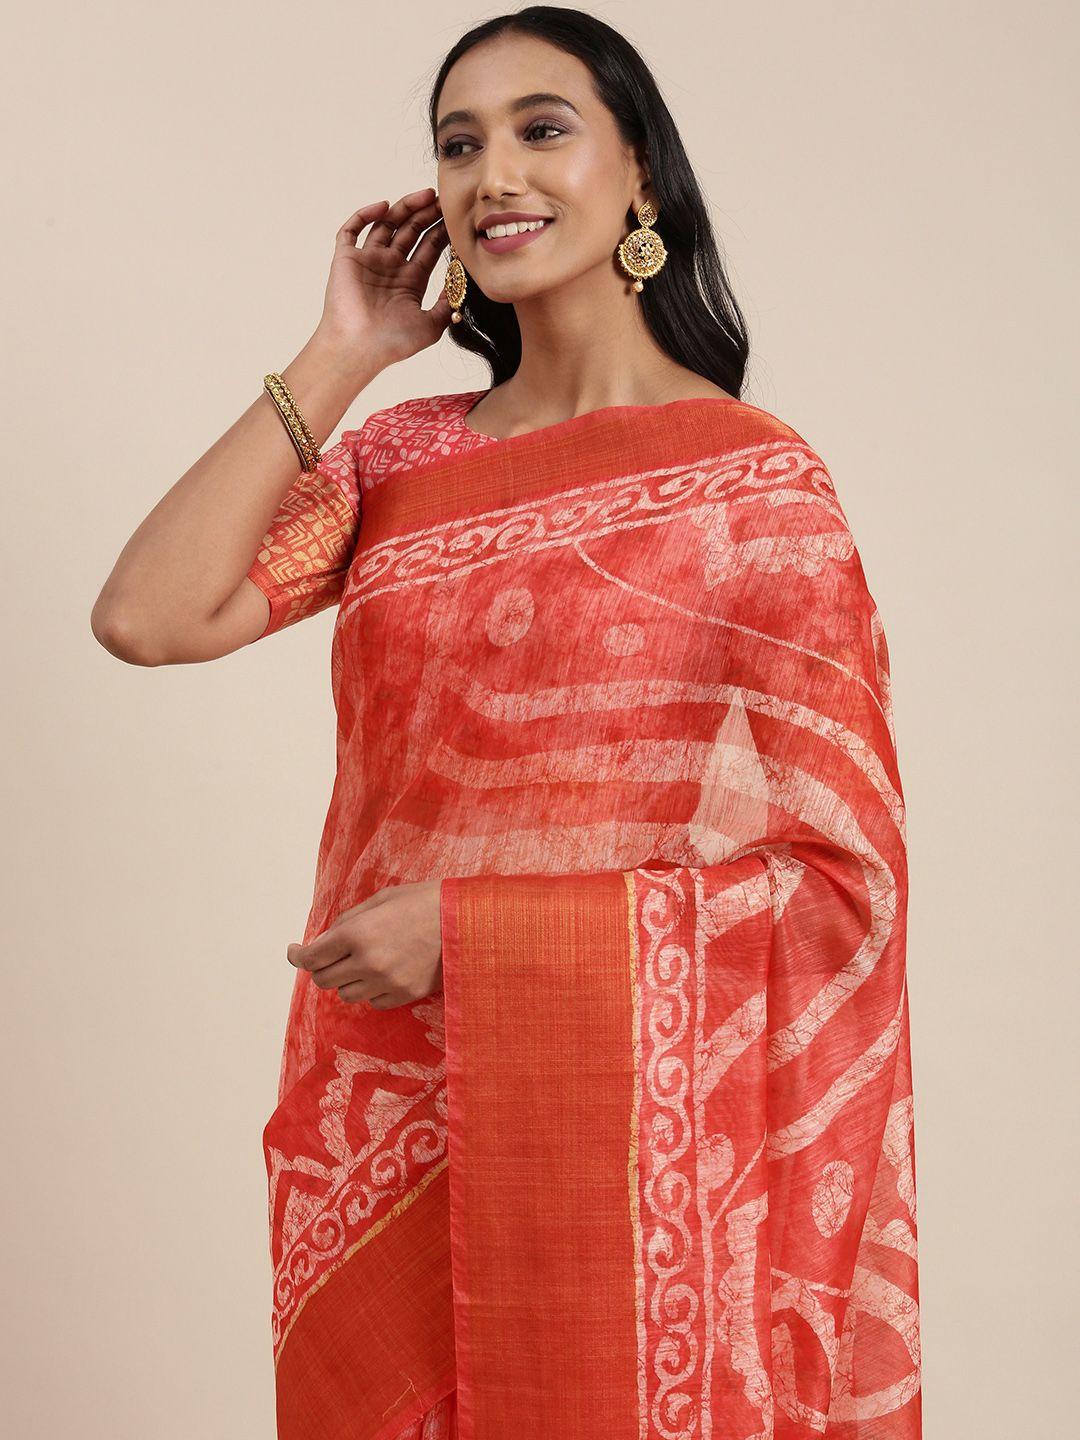 siril pink & white ethnic motifs printed saree